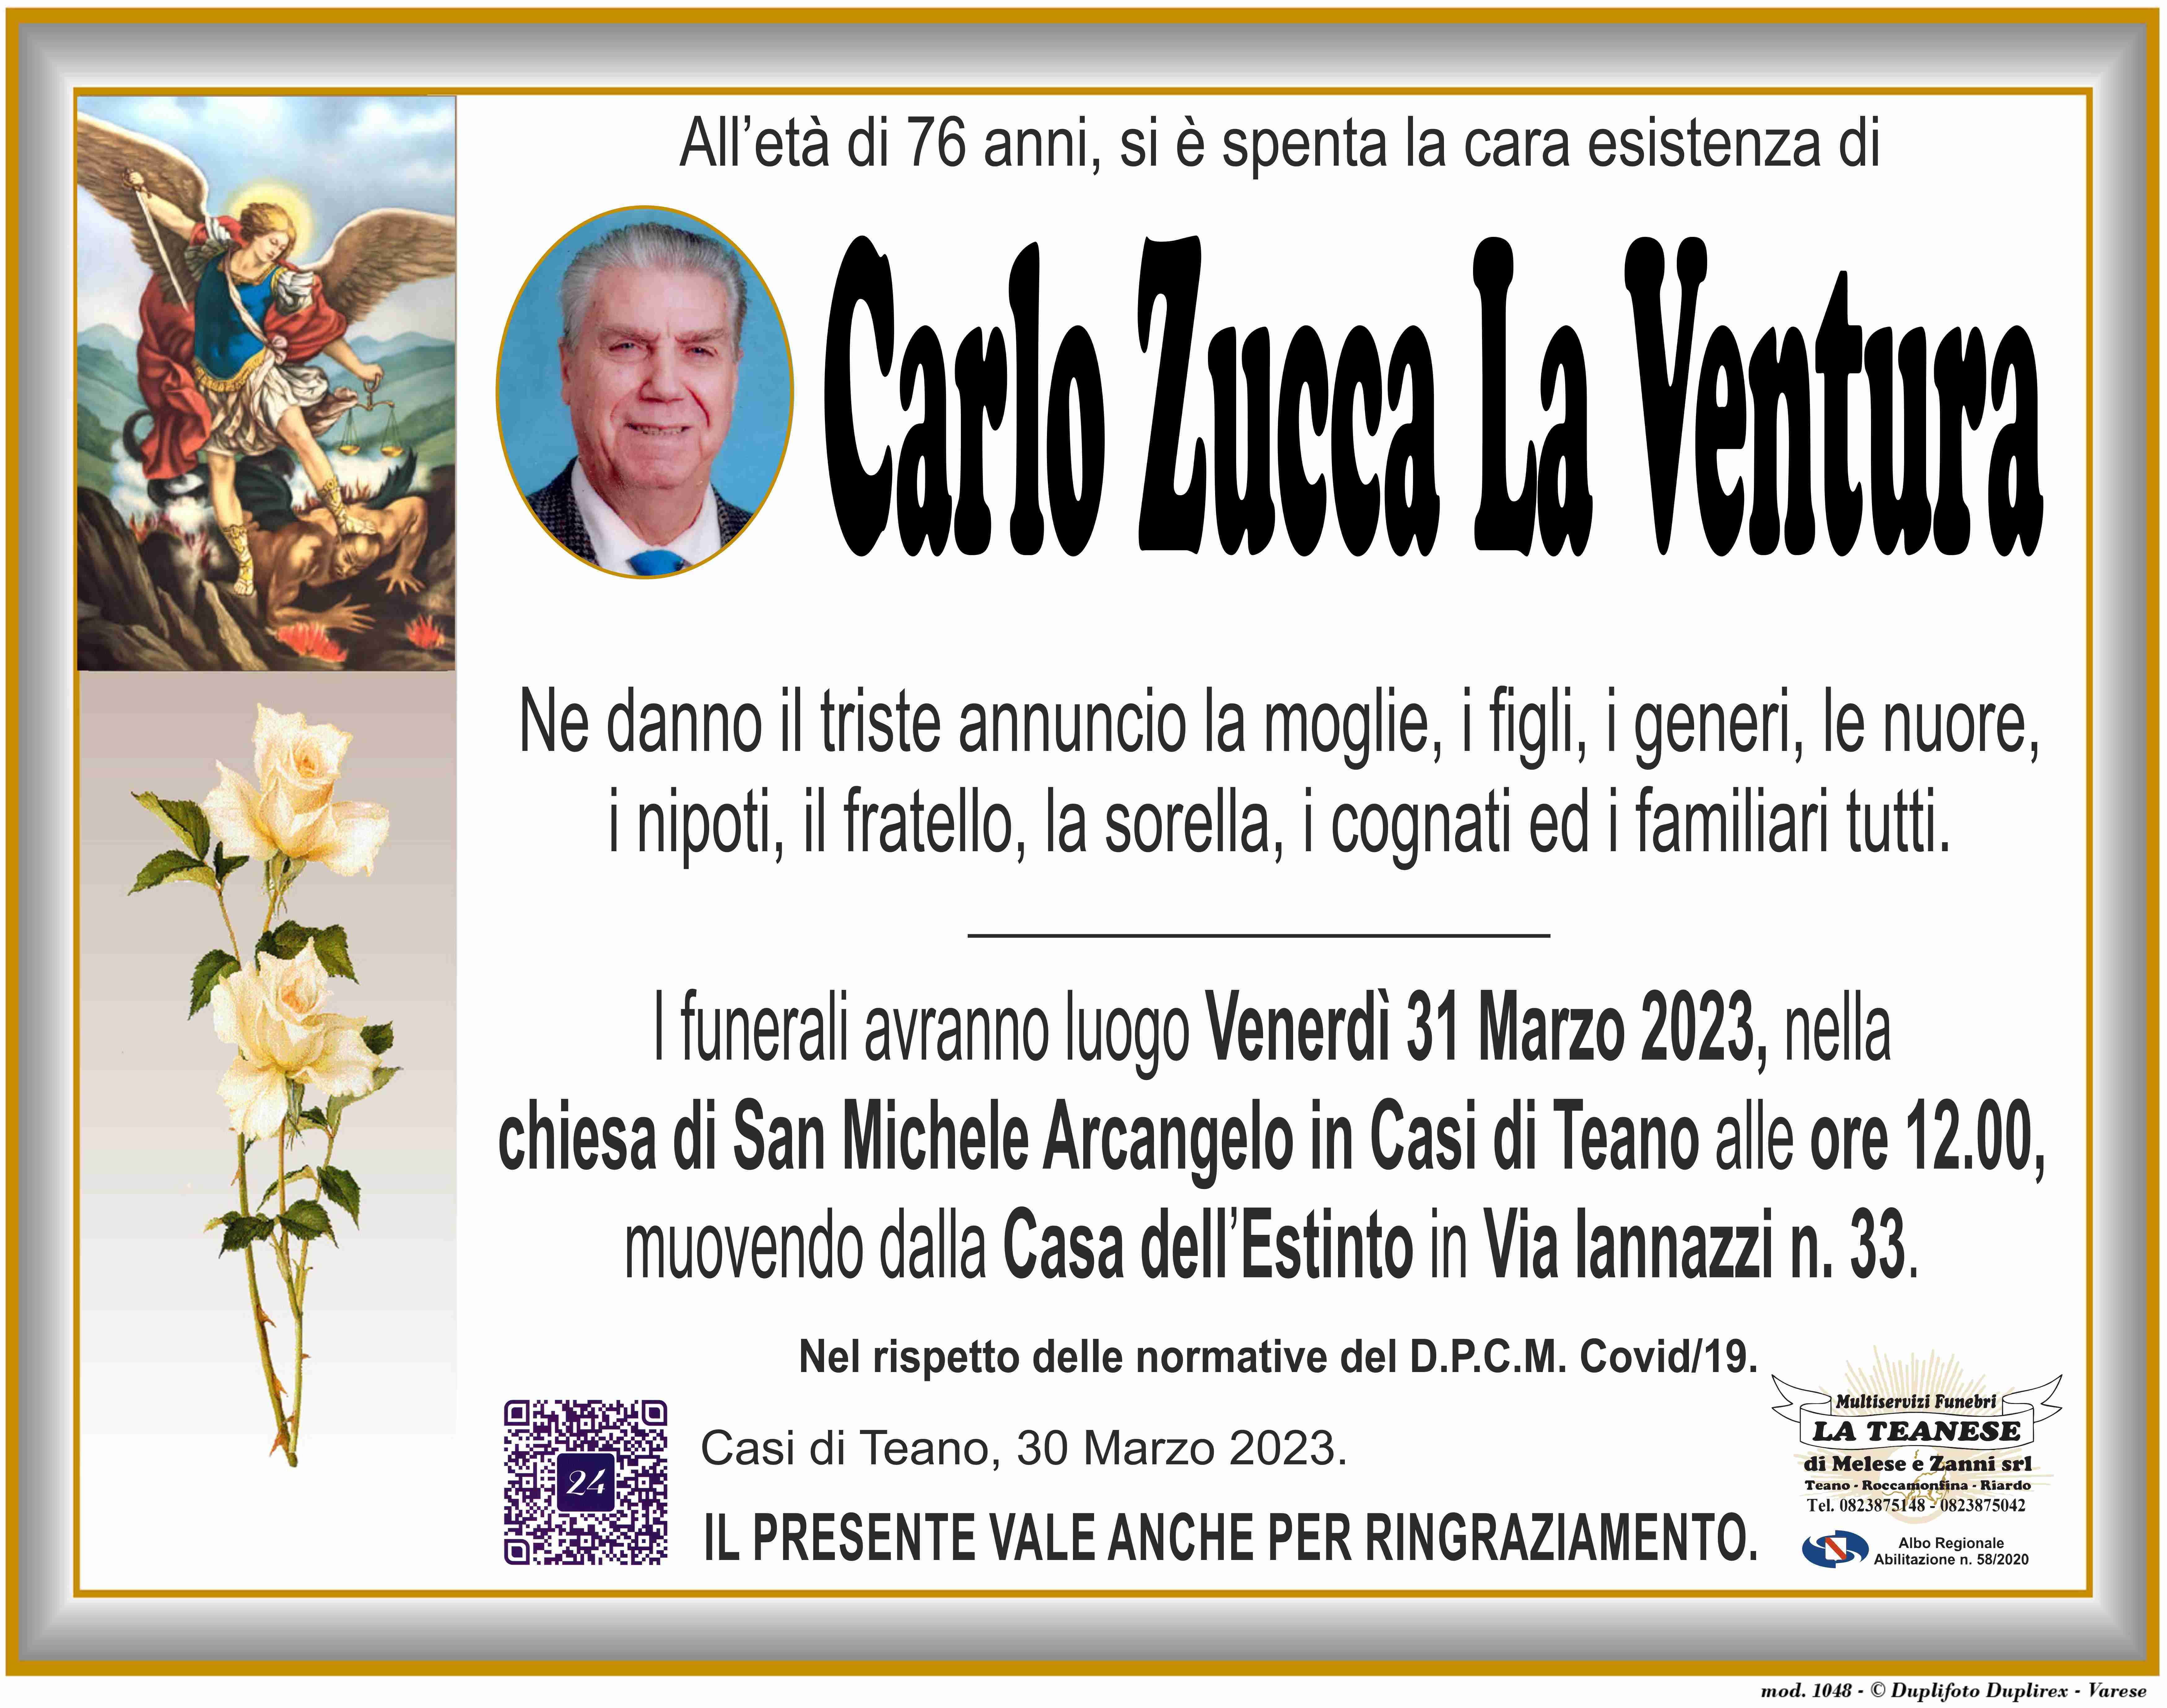 Carlo Zucca La Ventura